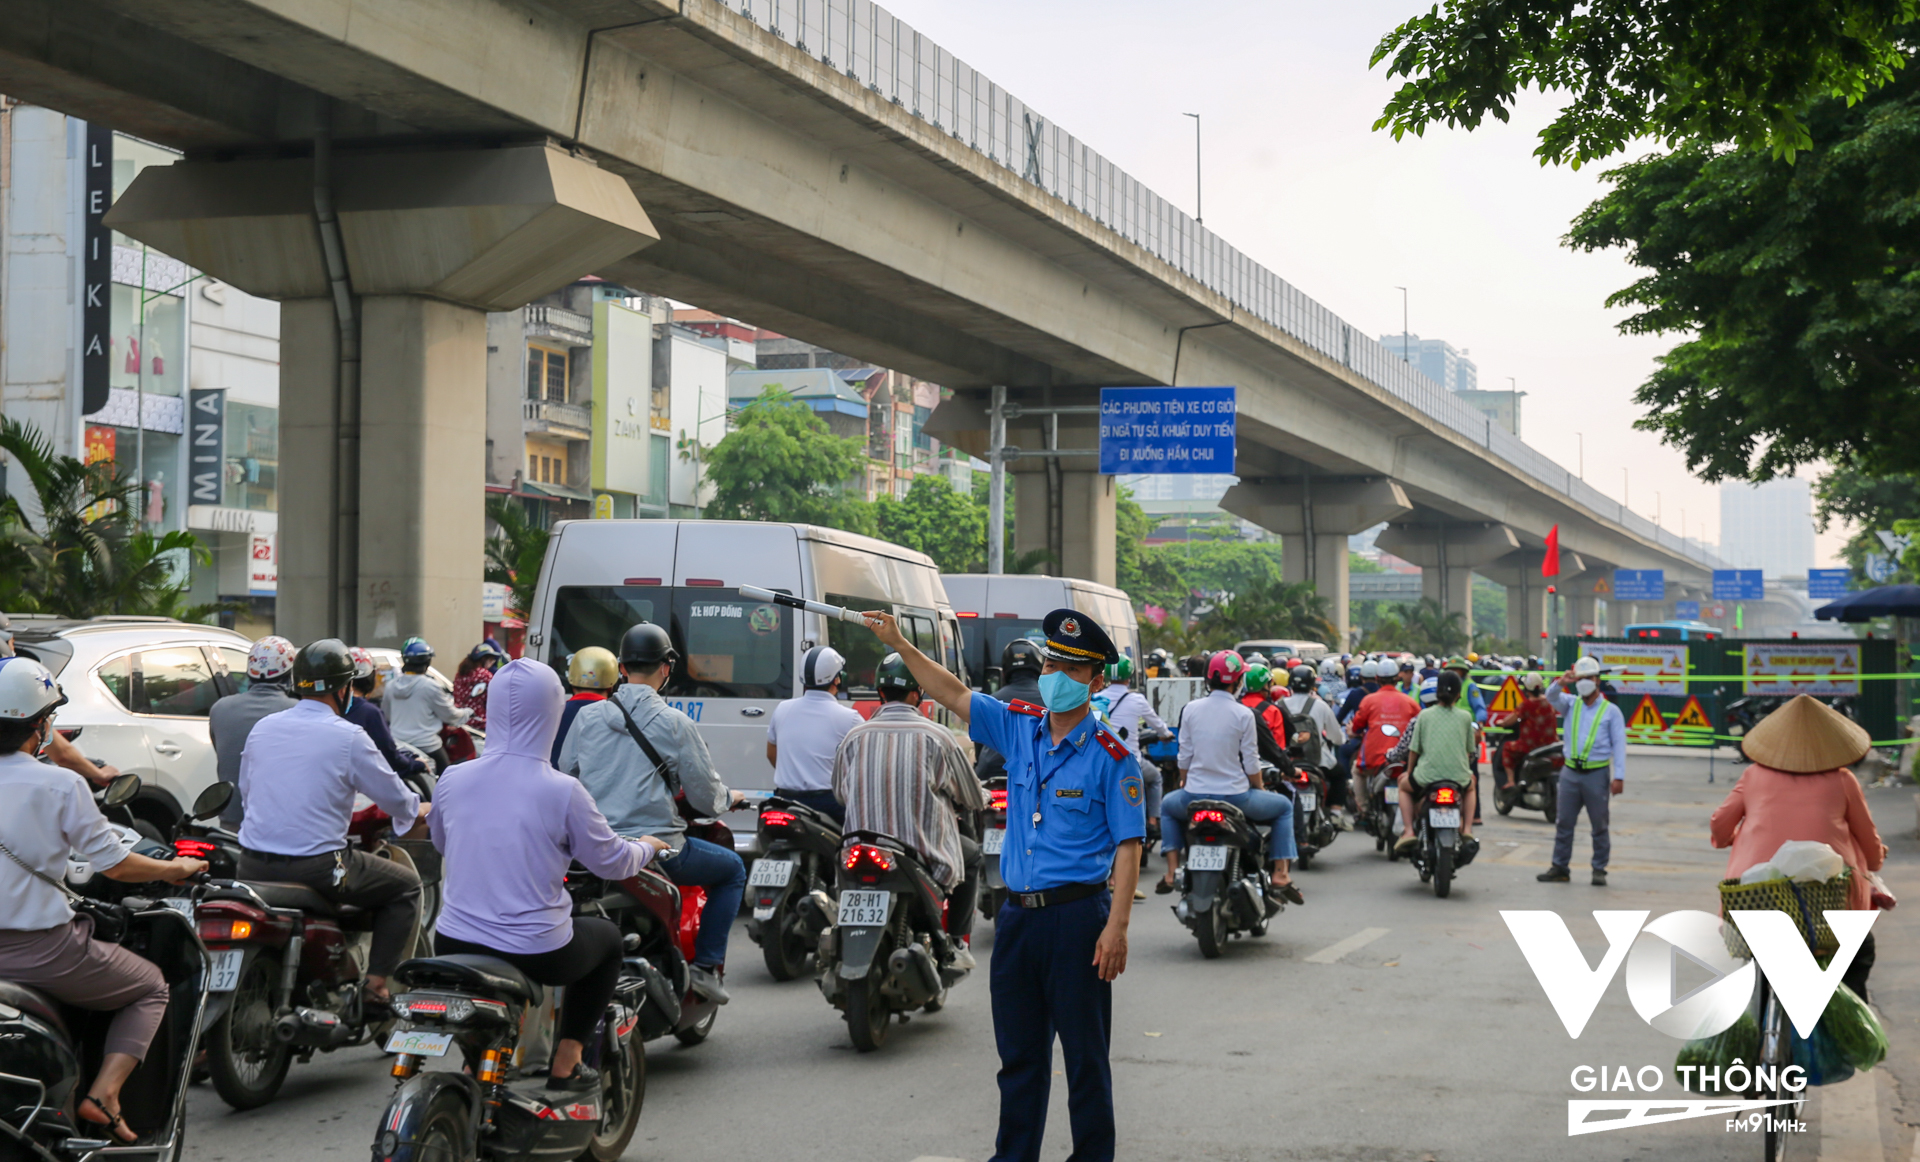 Ngay từ sớm, lực lượng Thanh tra Sở GTVT Hà Nội đã có mặt để hướng dẫn phân luồng cho các phương tiện tham gia giao thông tránh gây ùn tắc vào khung giờ cao điểm.